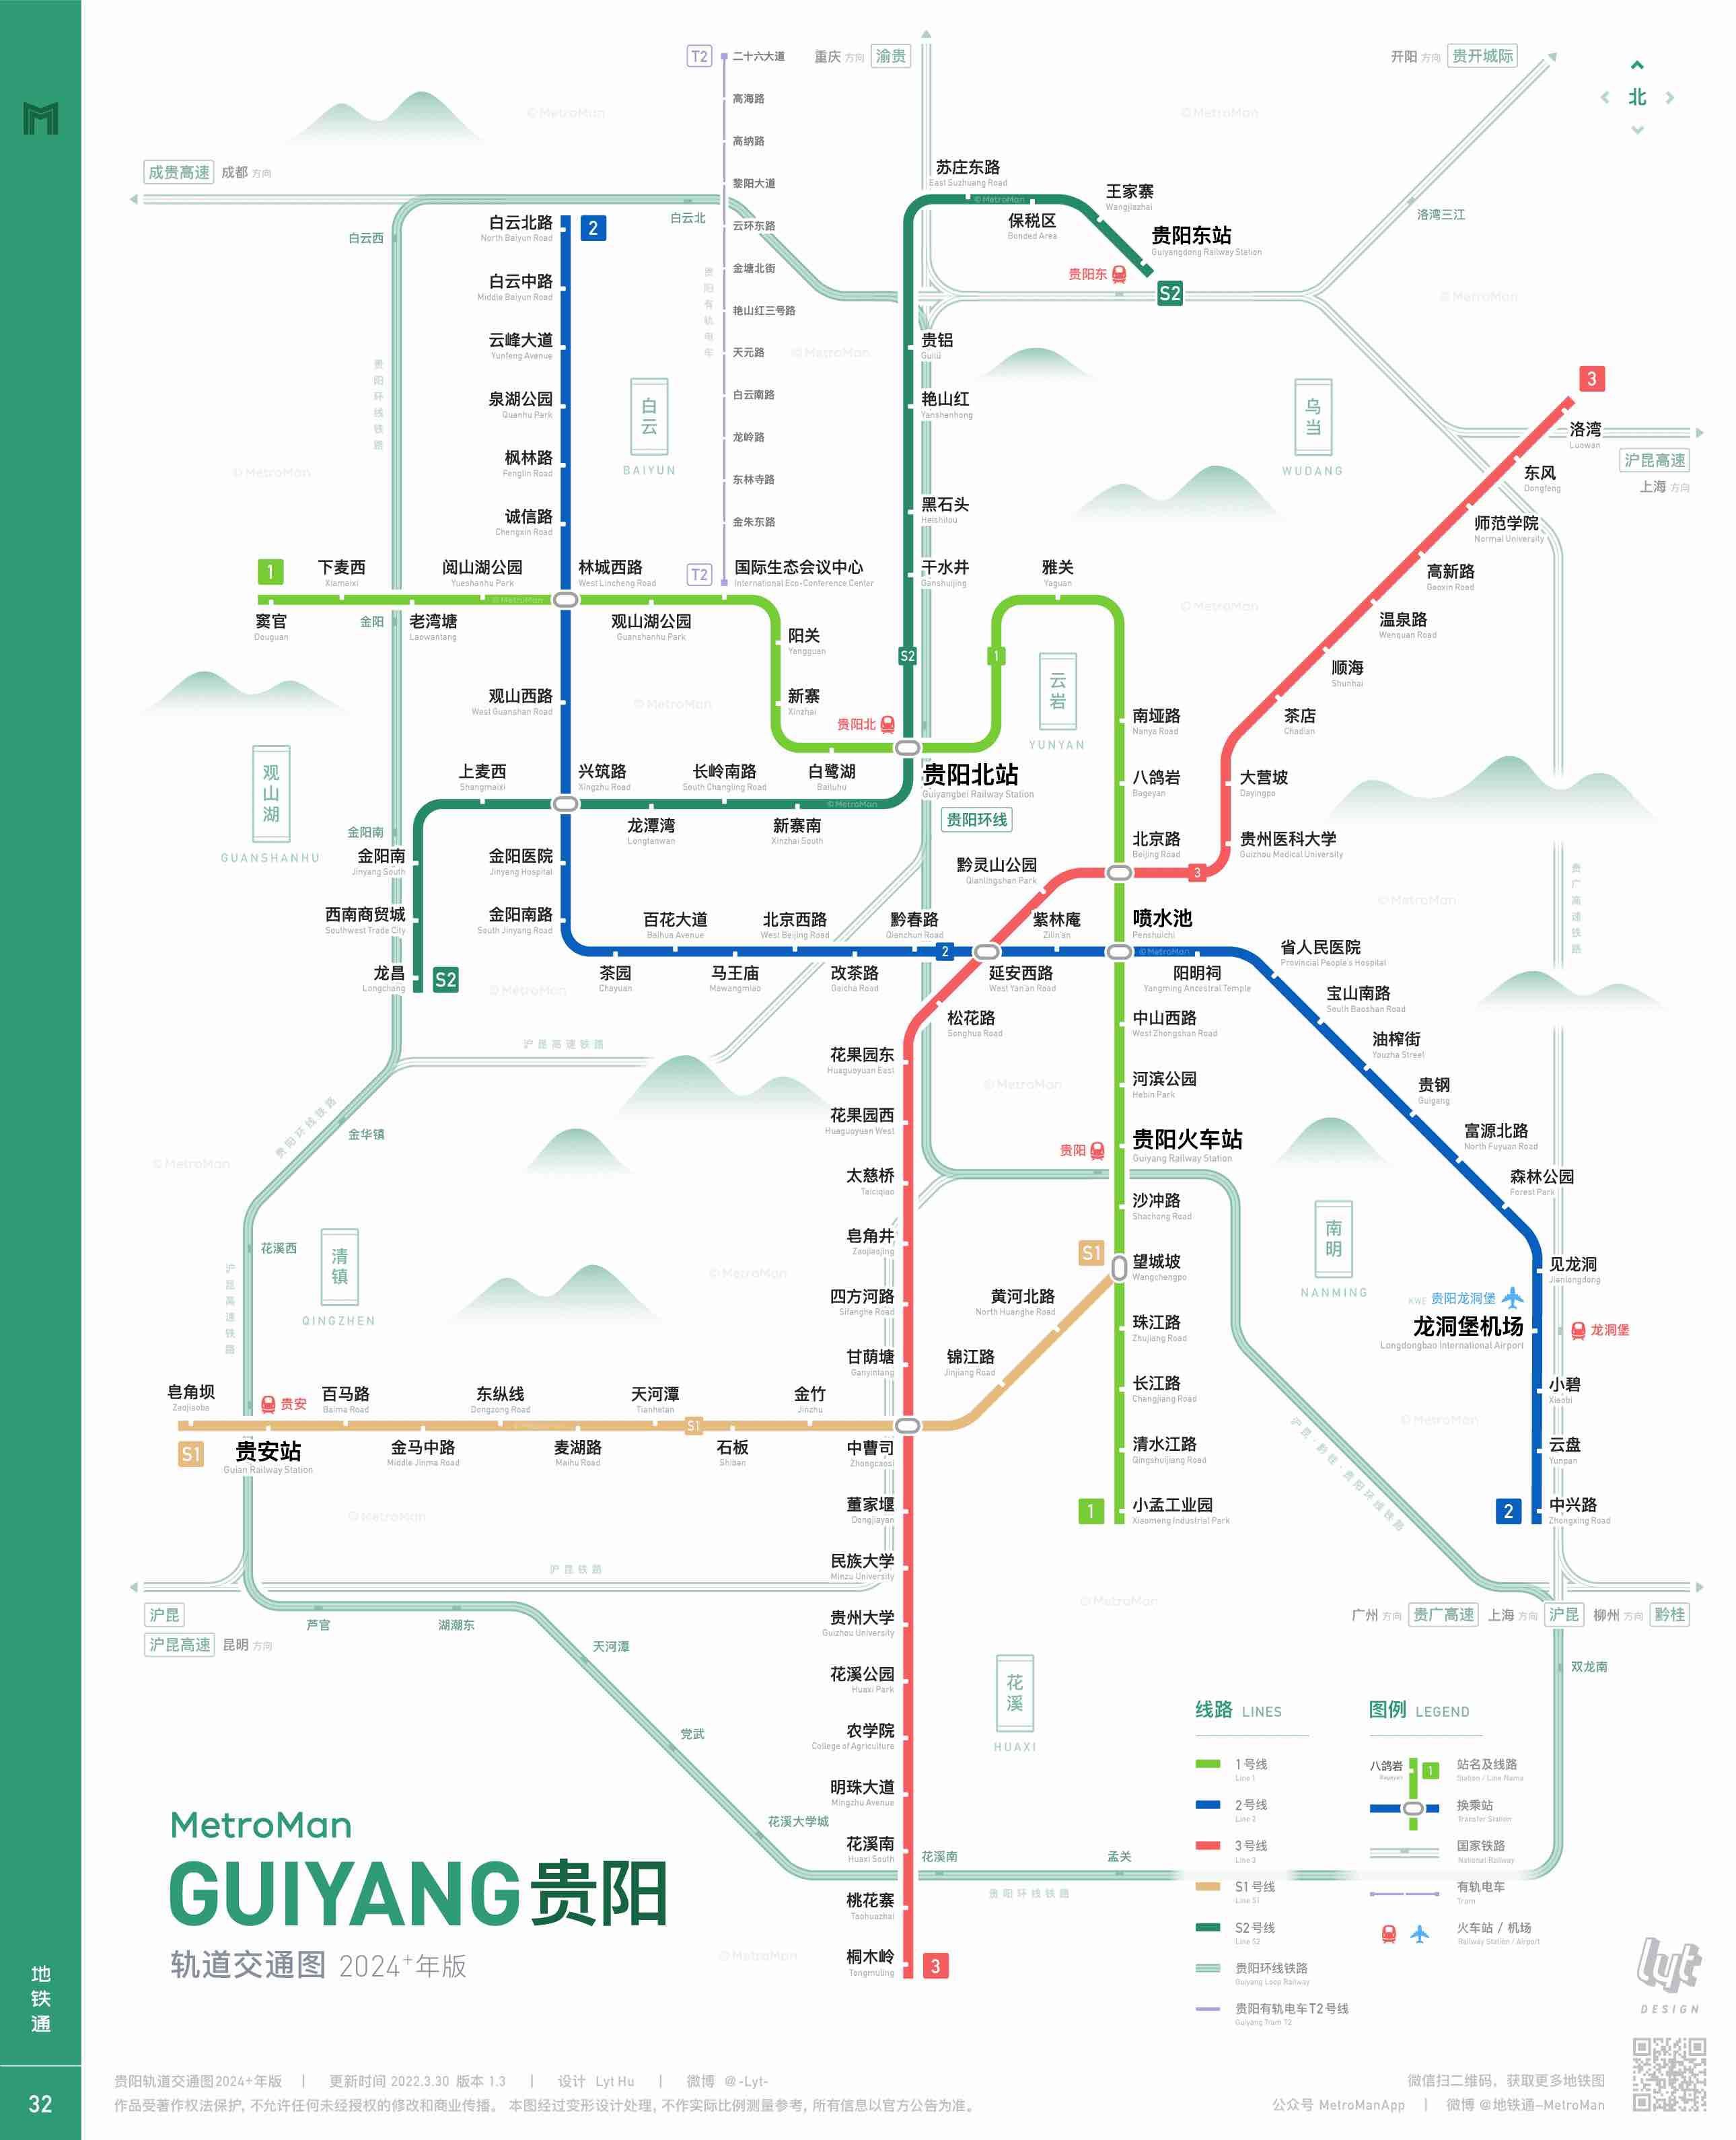 贵阳地铁3号线预计年底开通?看看站点附近楼盘的详尽盘点吧!